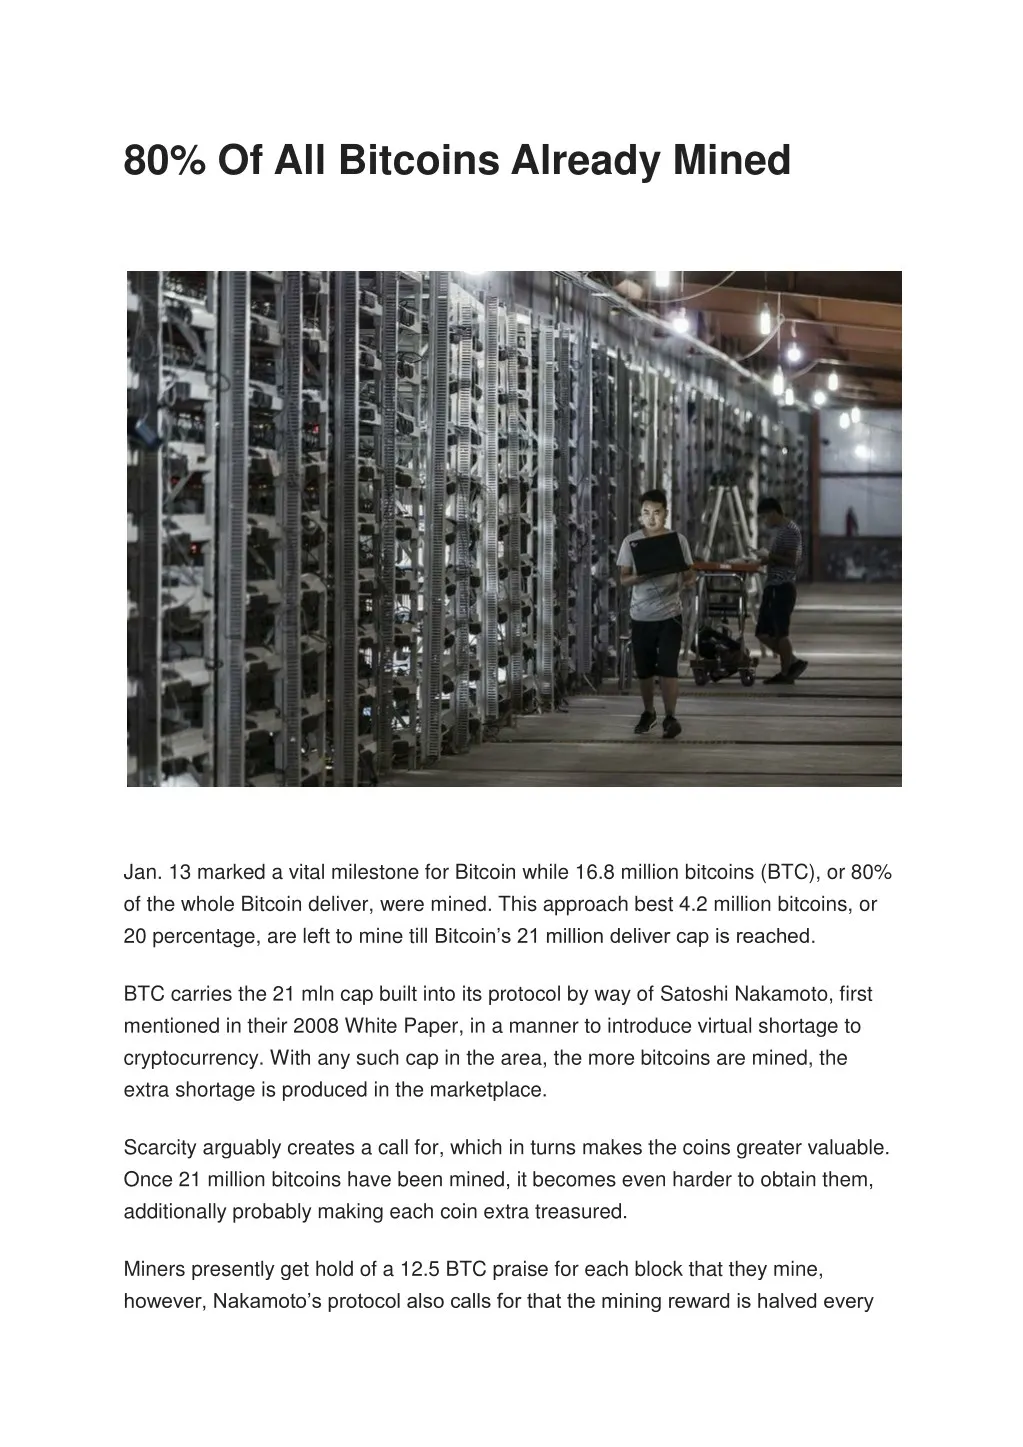 80 of all bitcoins already mined